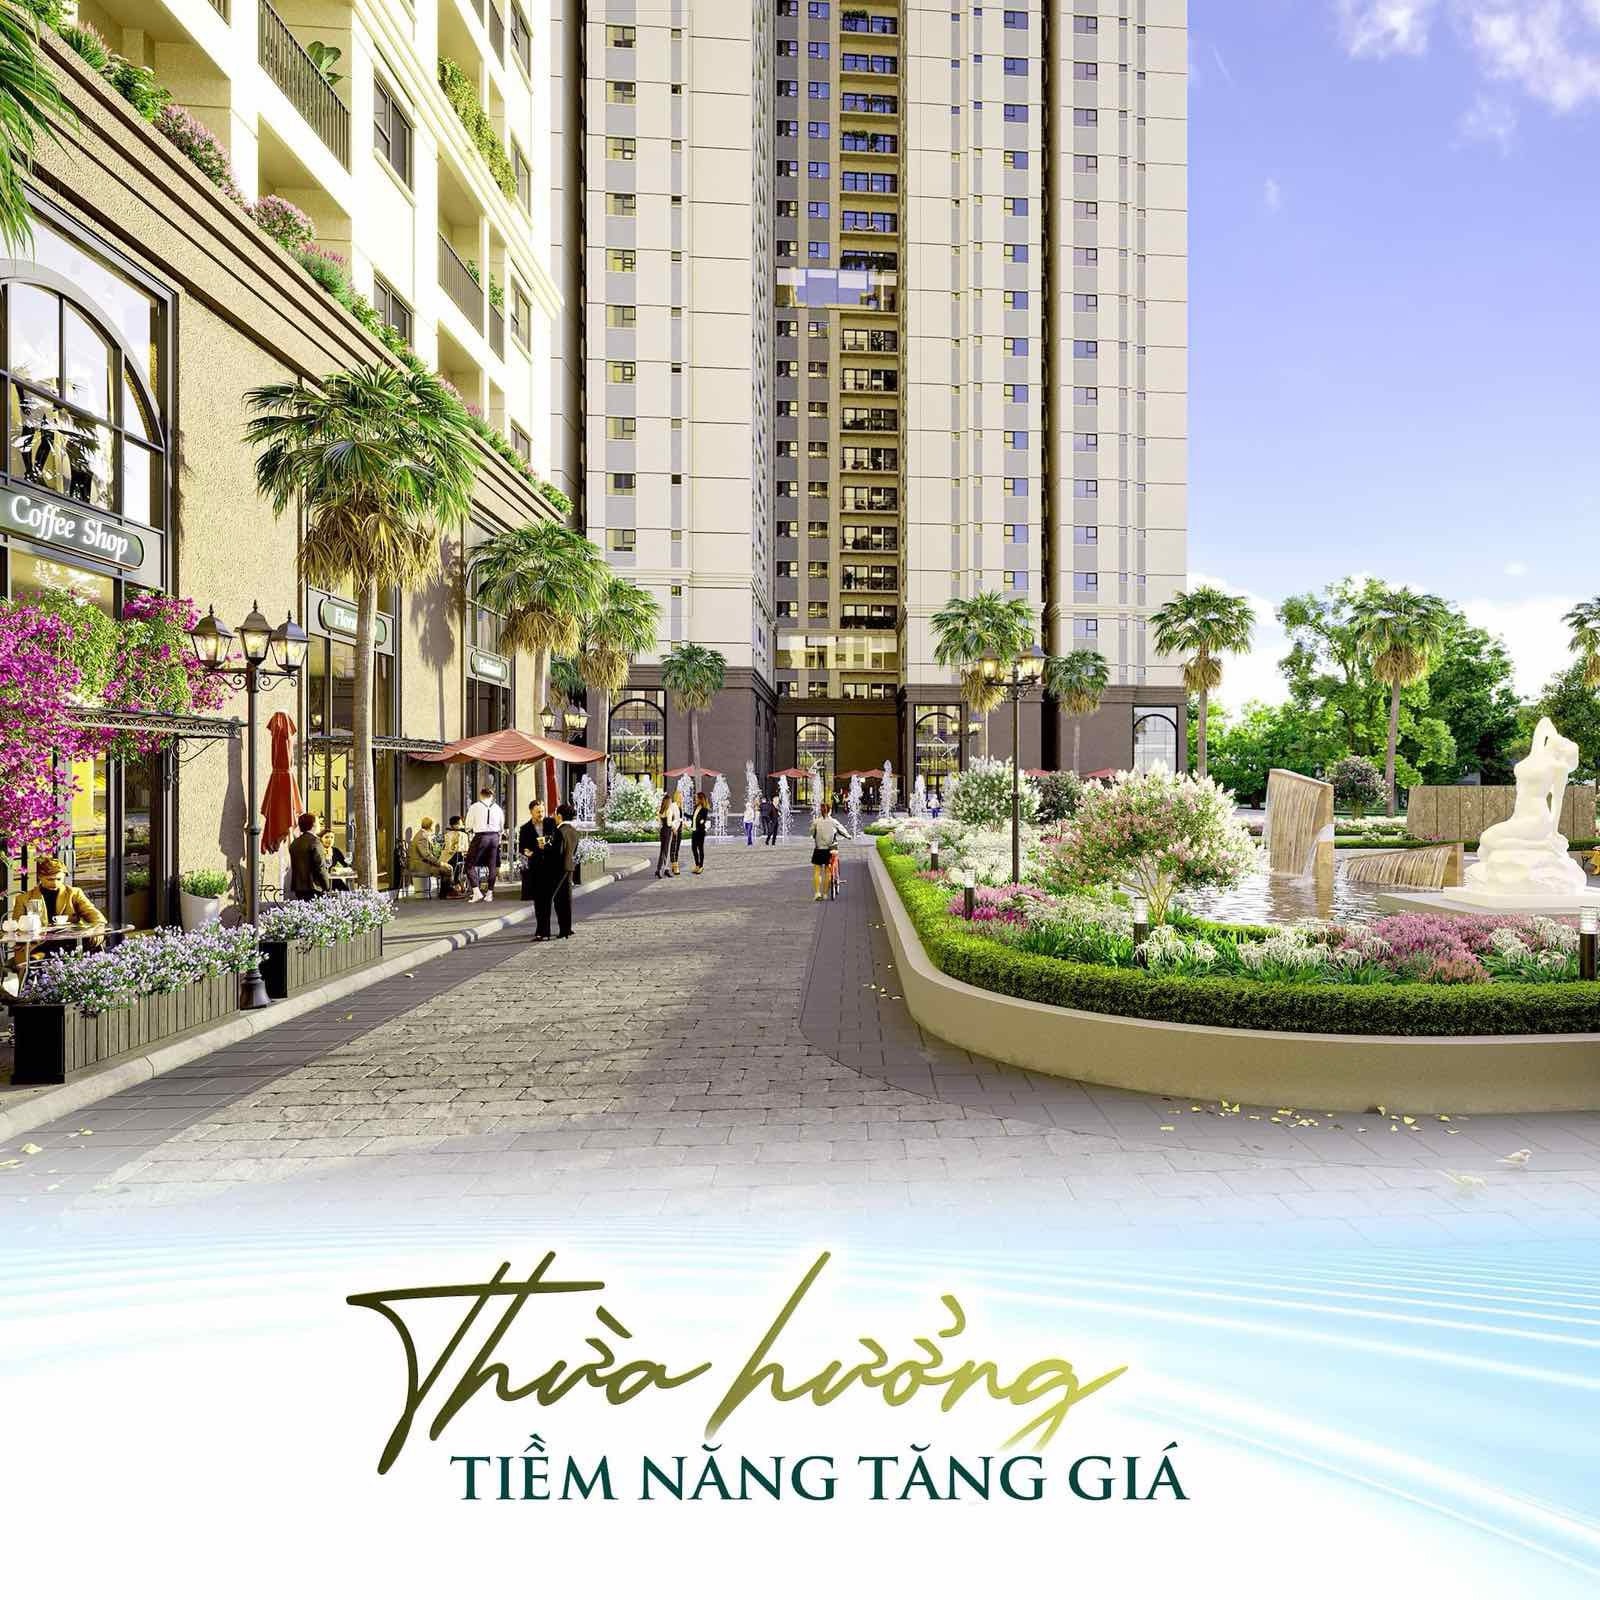 Trả trước 700 triệu Thanh Toán Linh Hoạt 0.5%/Tháng, Hỗ Trợ Lên Đến 8 Năm 14113593